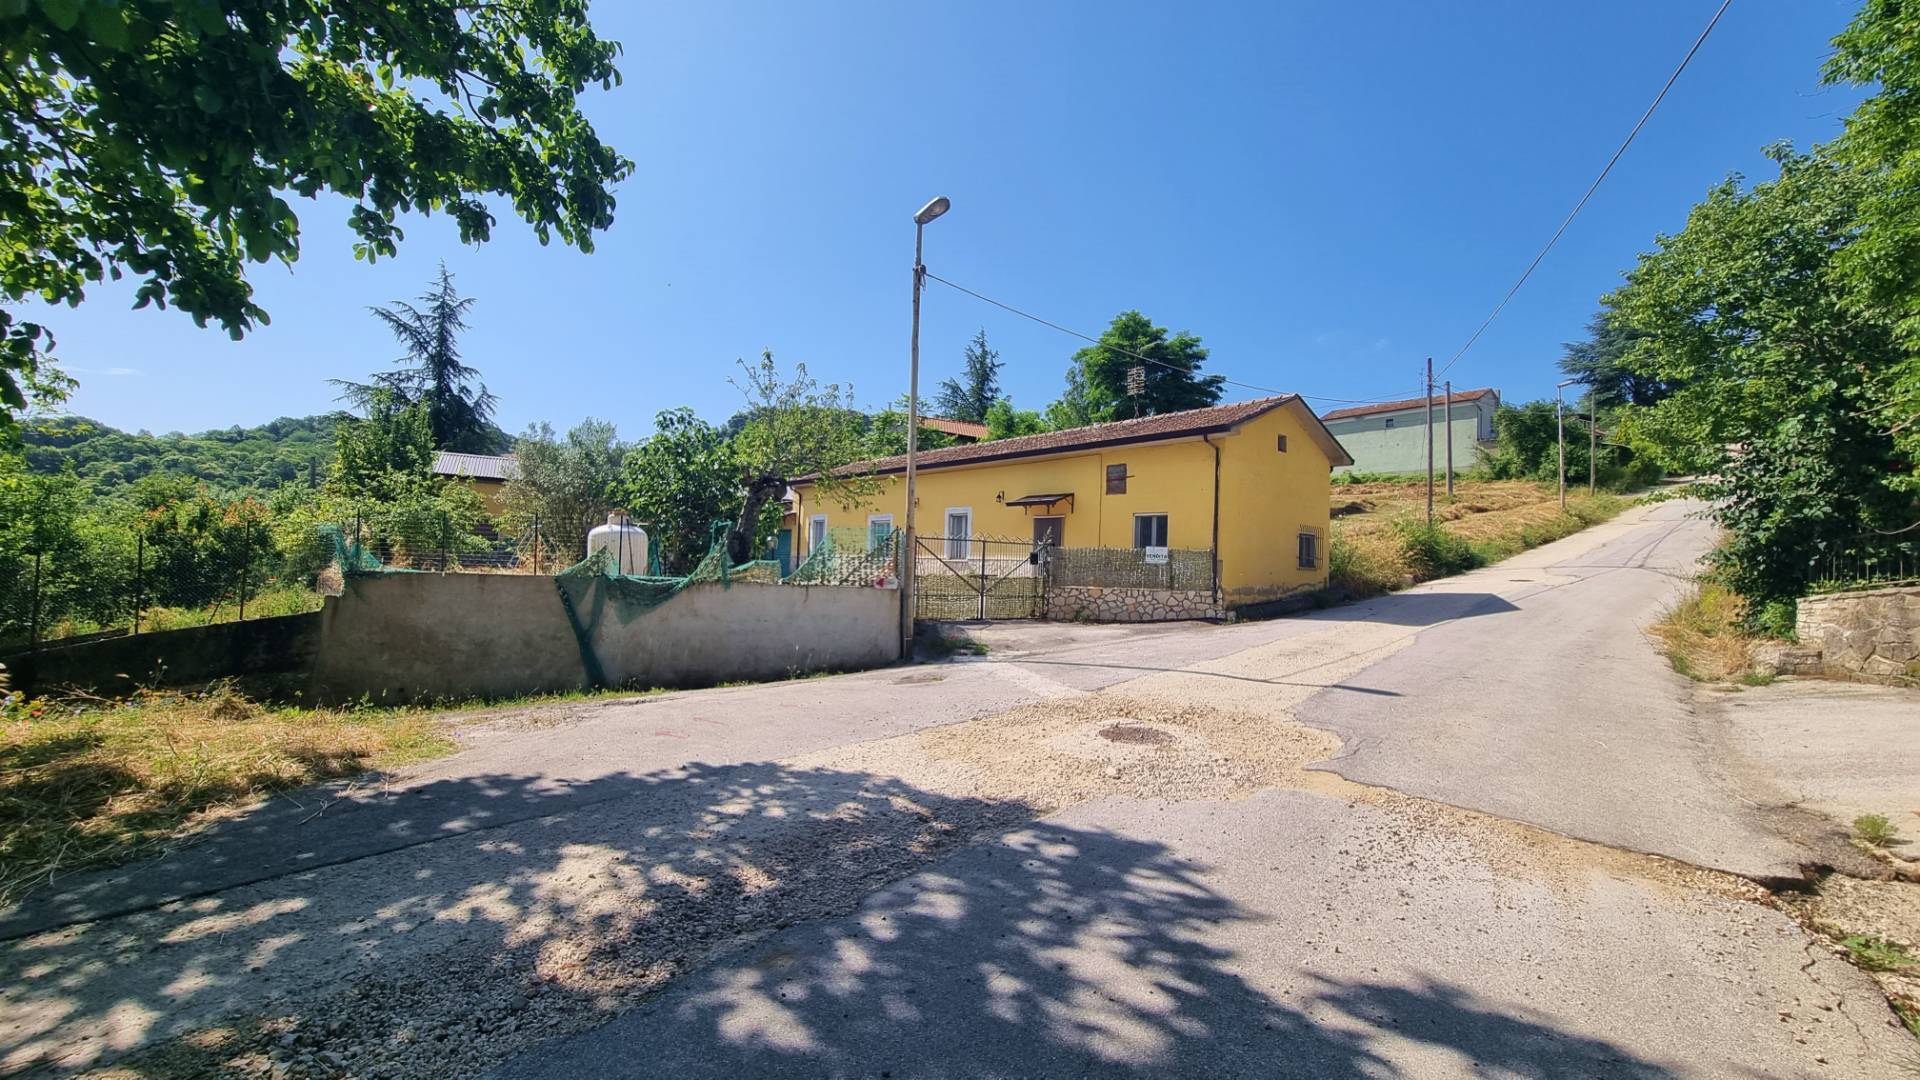 Villa Bifamiliare in vendita a Trevico, 8 locali, zona Località: SanVito, prezzo € 70.000 | PortaleAgenzieImmobiliari.it